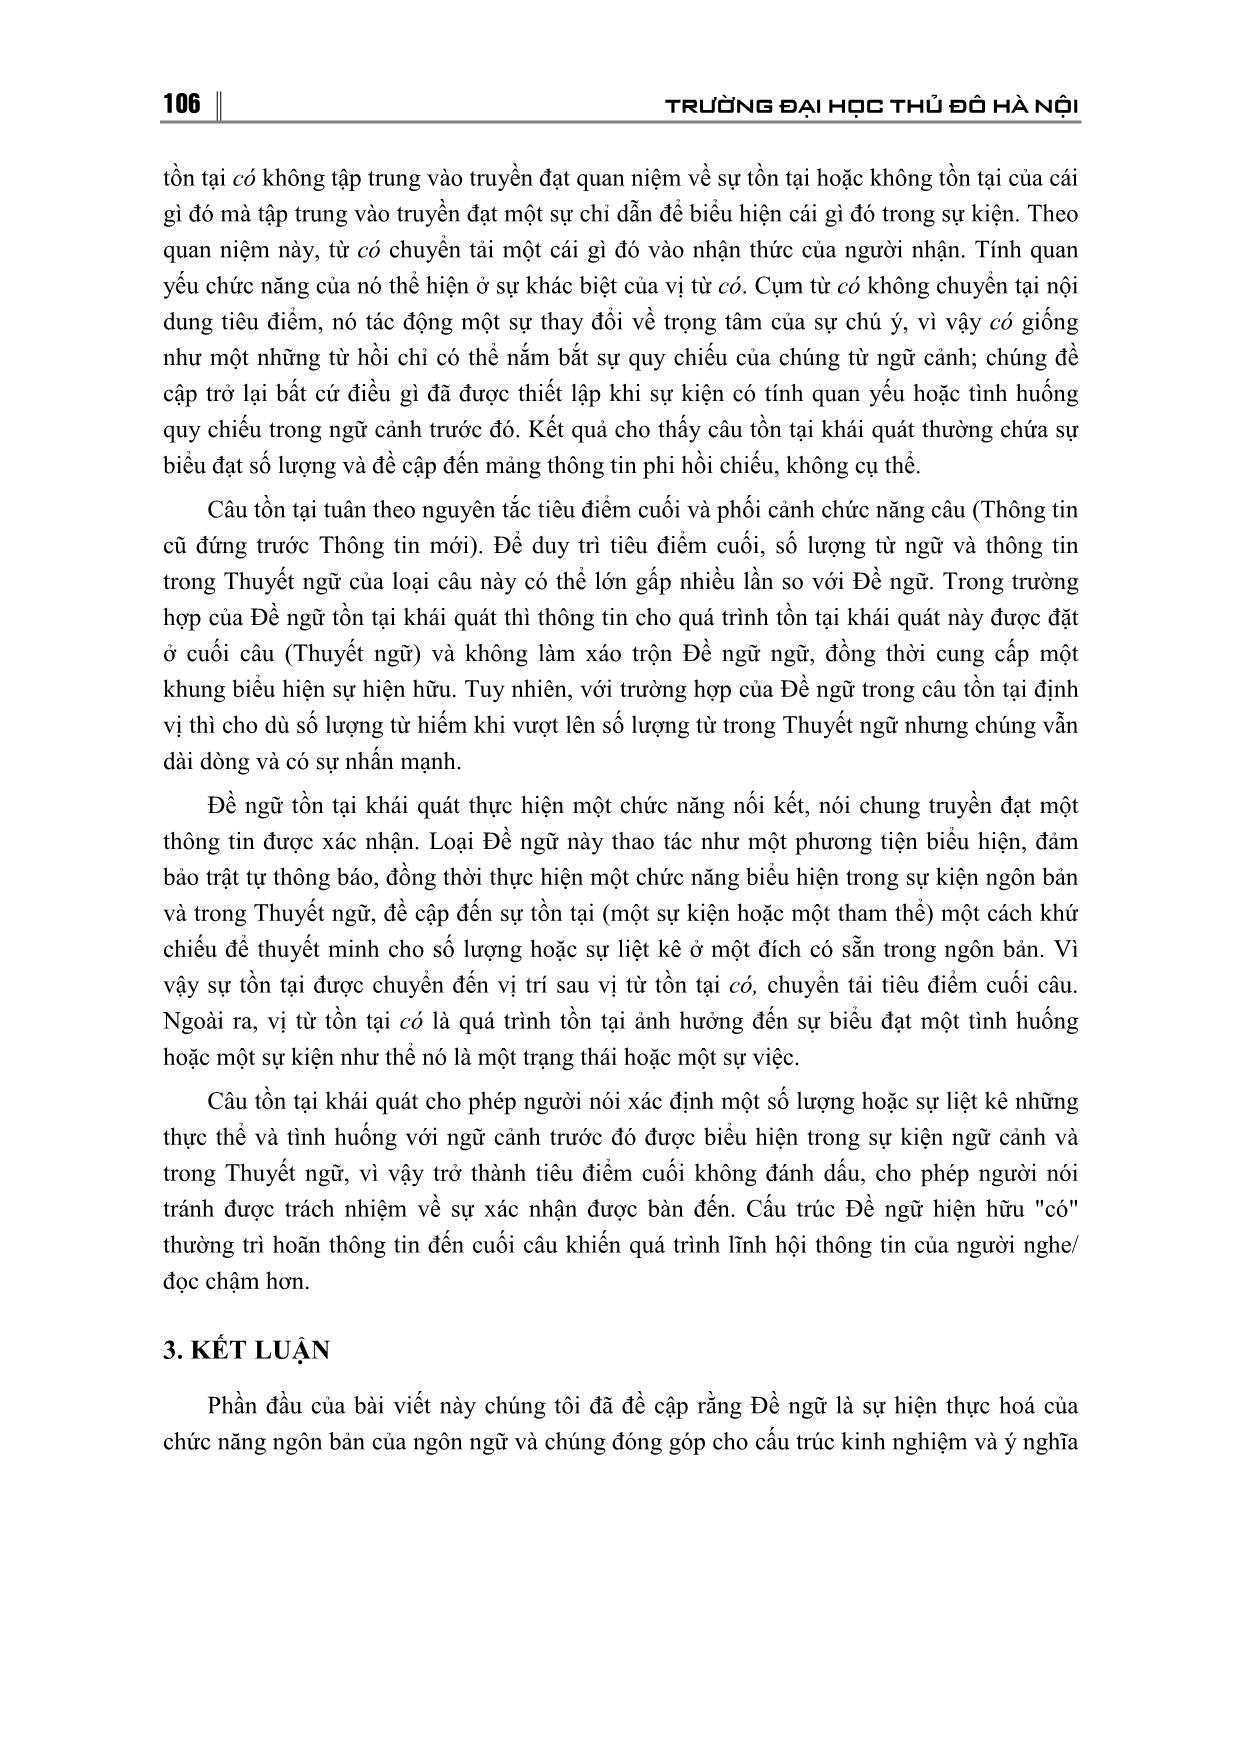 Cấu tạo và chức năng ngôn bản của đề ngữ trong câu tồn tại Tiếng Việt trang 7